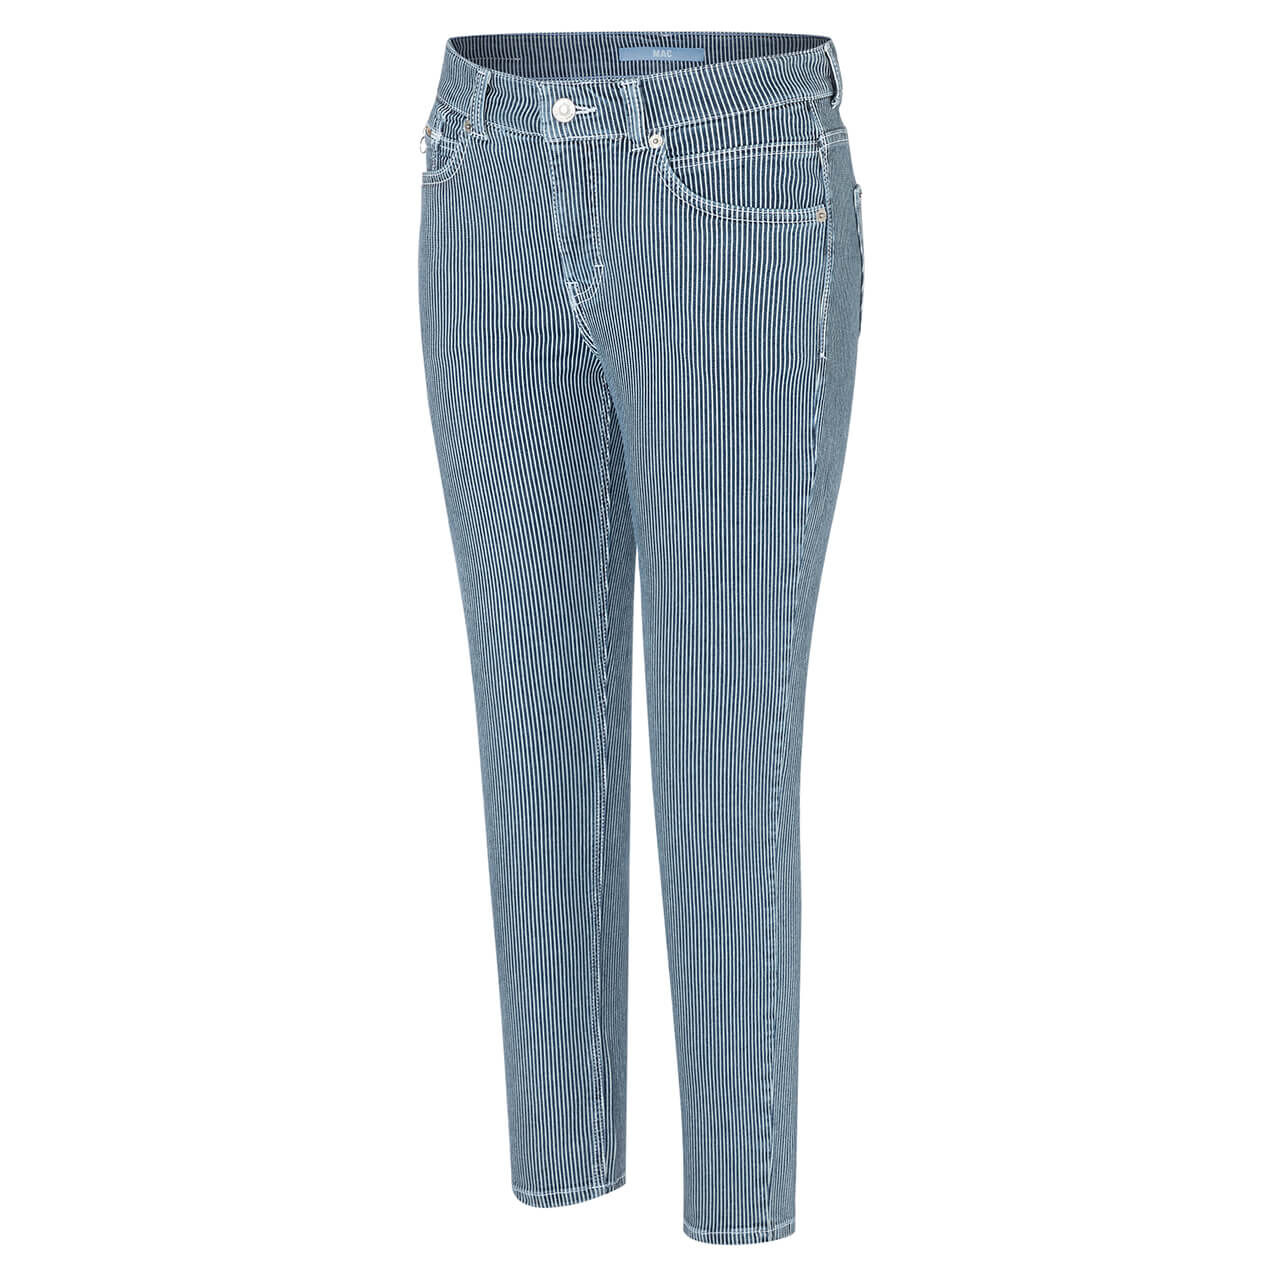 MAC Jeans Slim für Damen in Blau gestreift, FarbNr.: D505